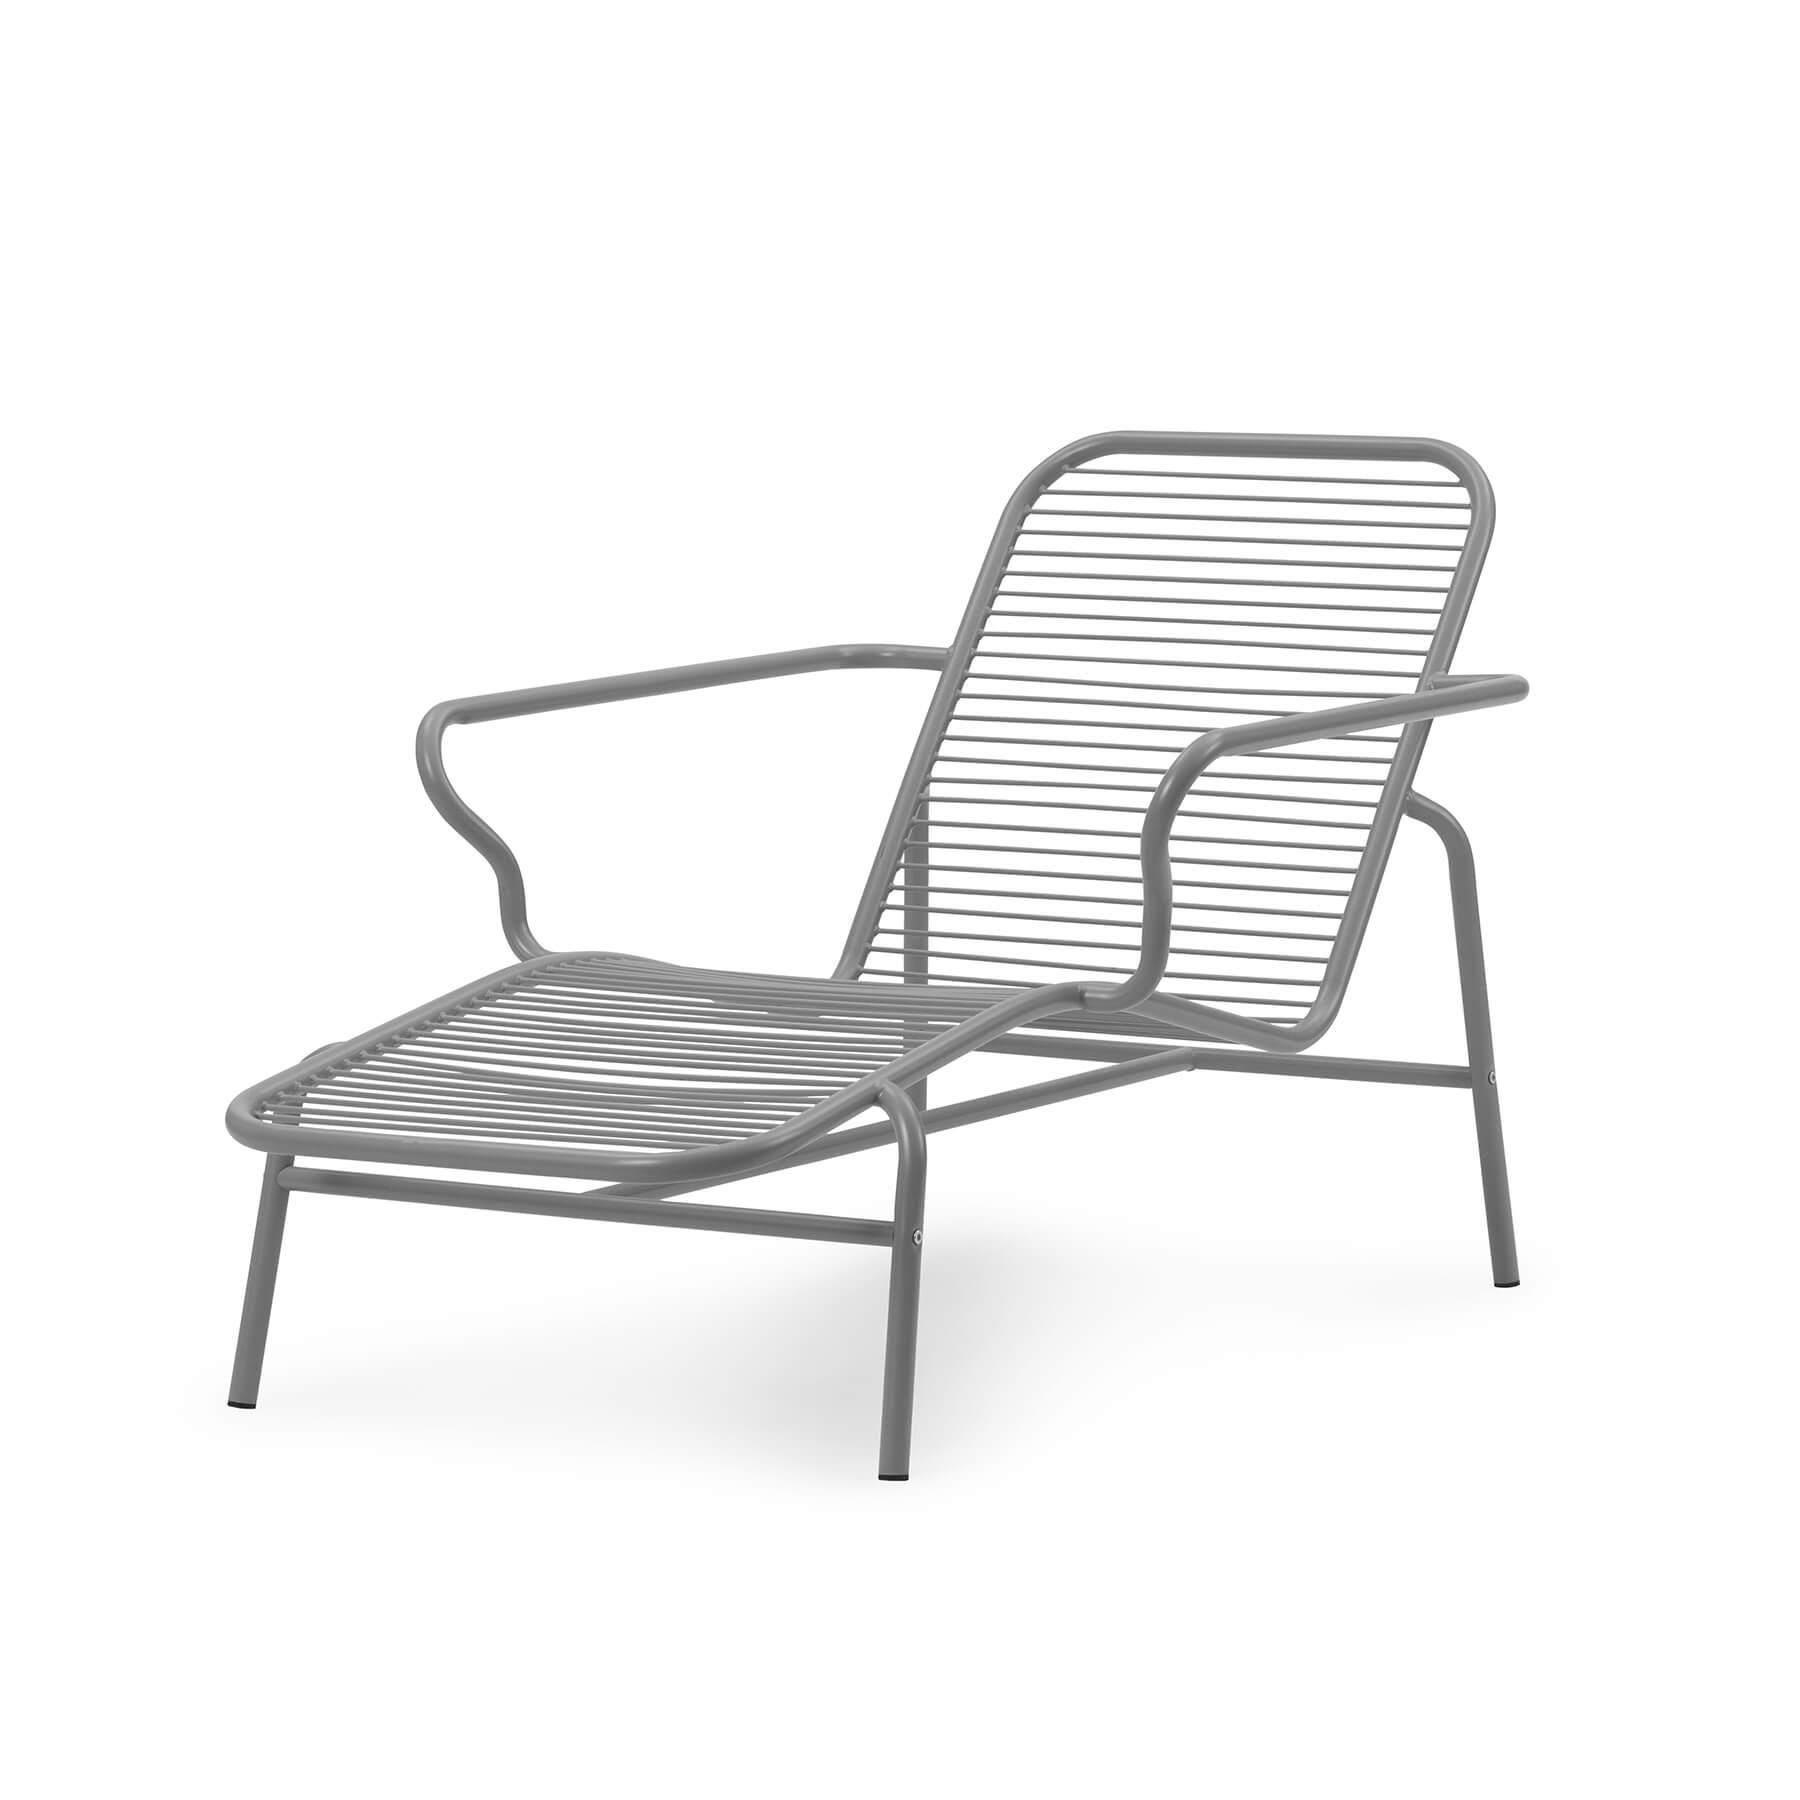 Normann Copenhagen Vig Garden Chaise Lounge Chair Grey Designer Furniture From Holloways Of Ludlow